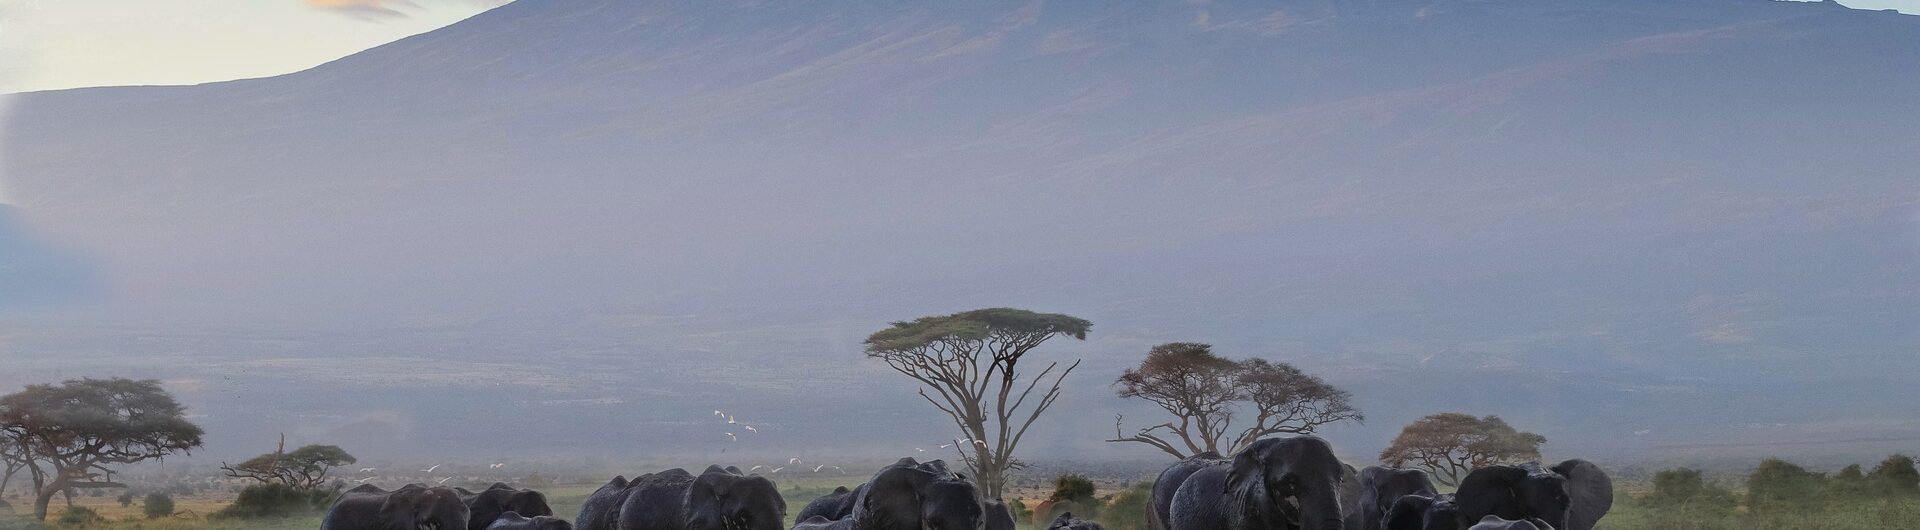 wyprawa na kilimanjaro afryka